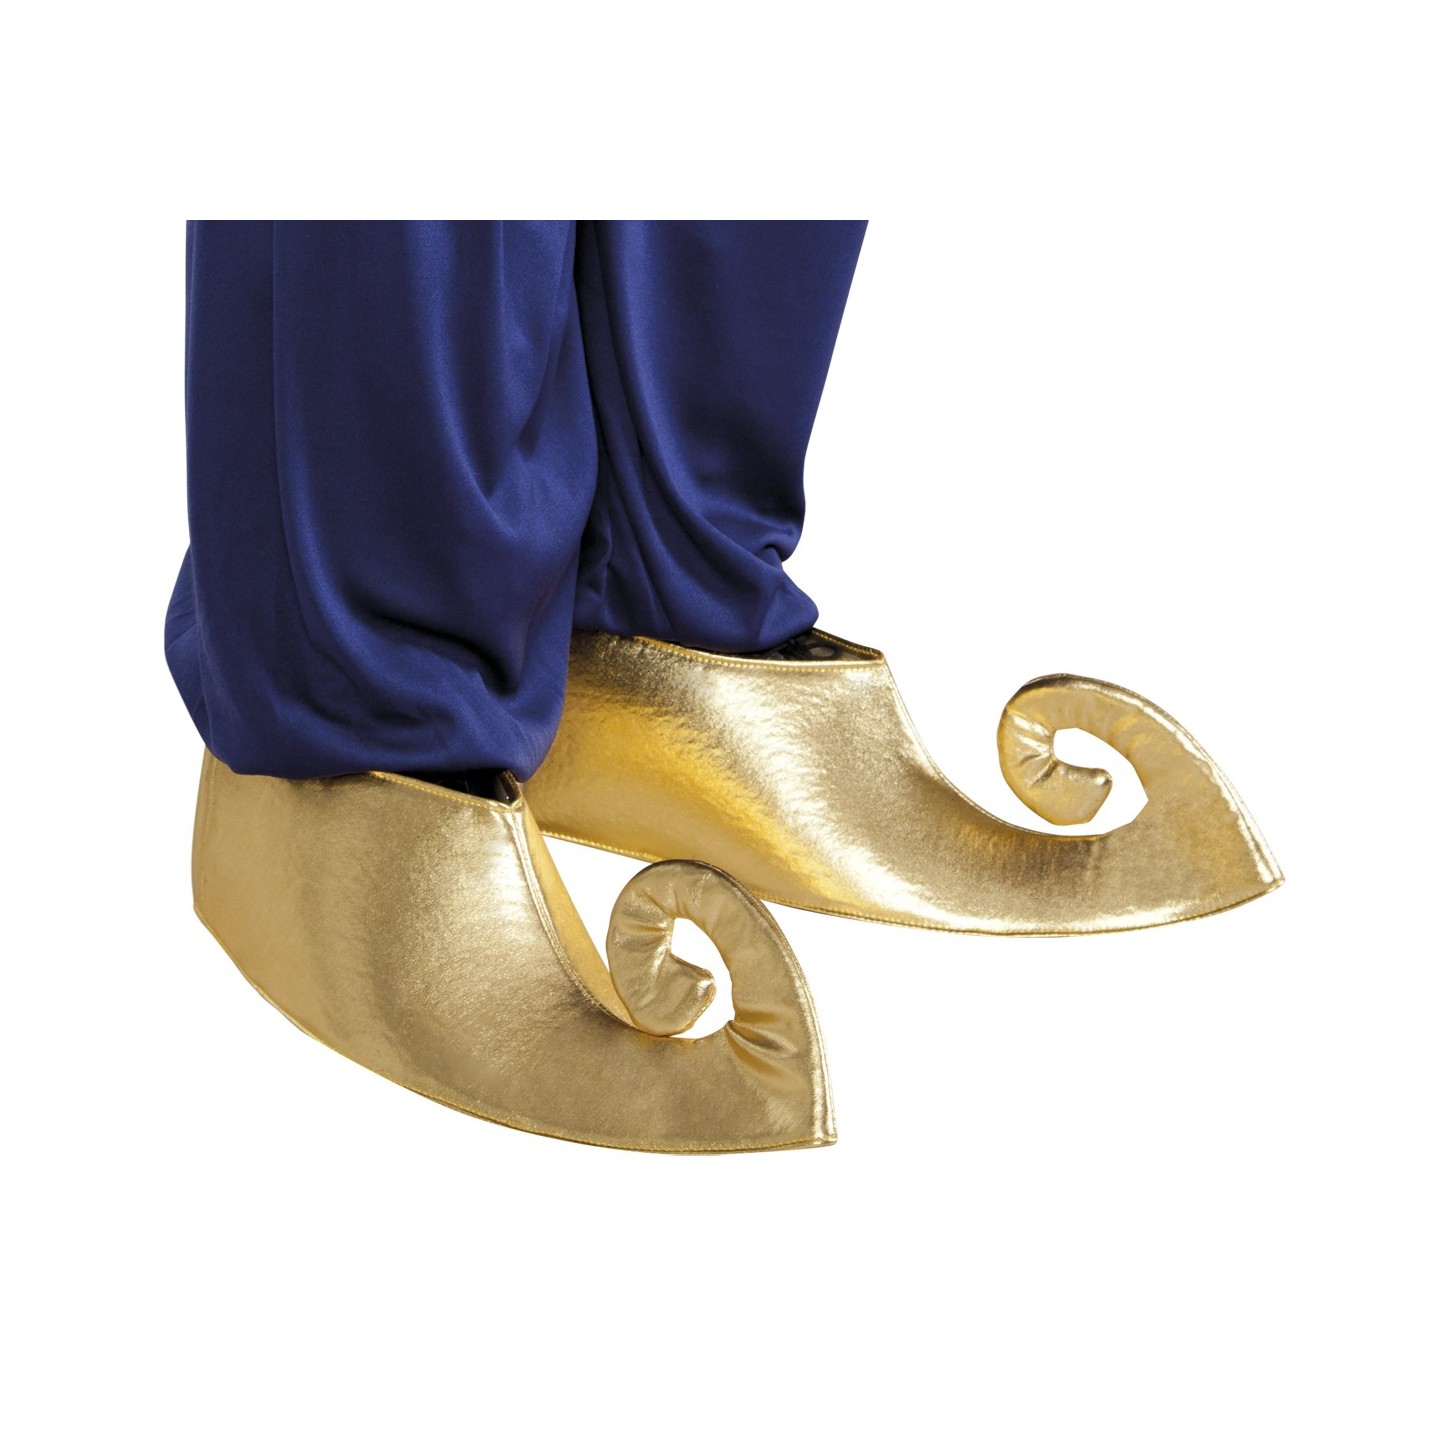 Sultan schoen overtrekken Goud